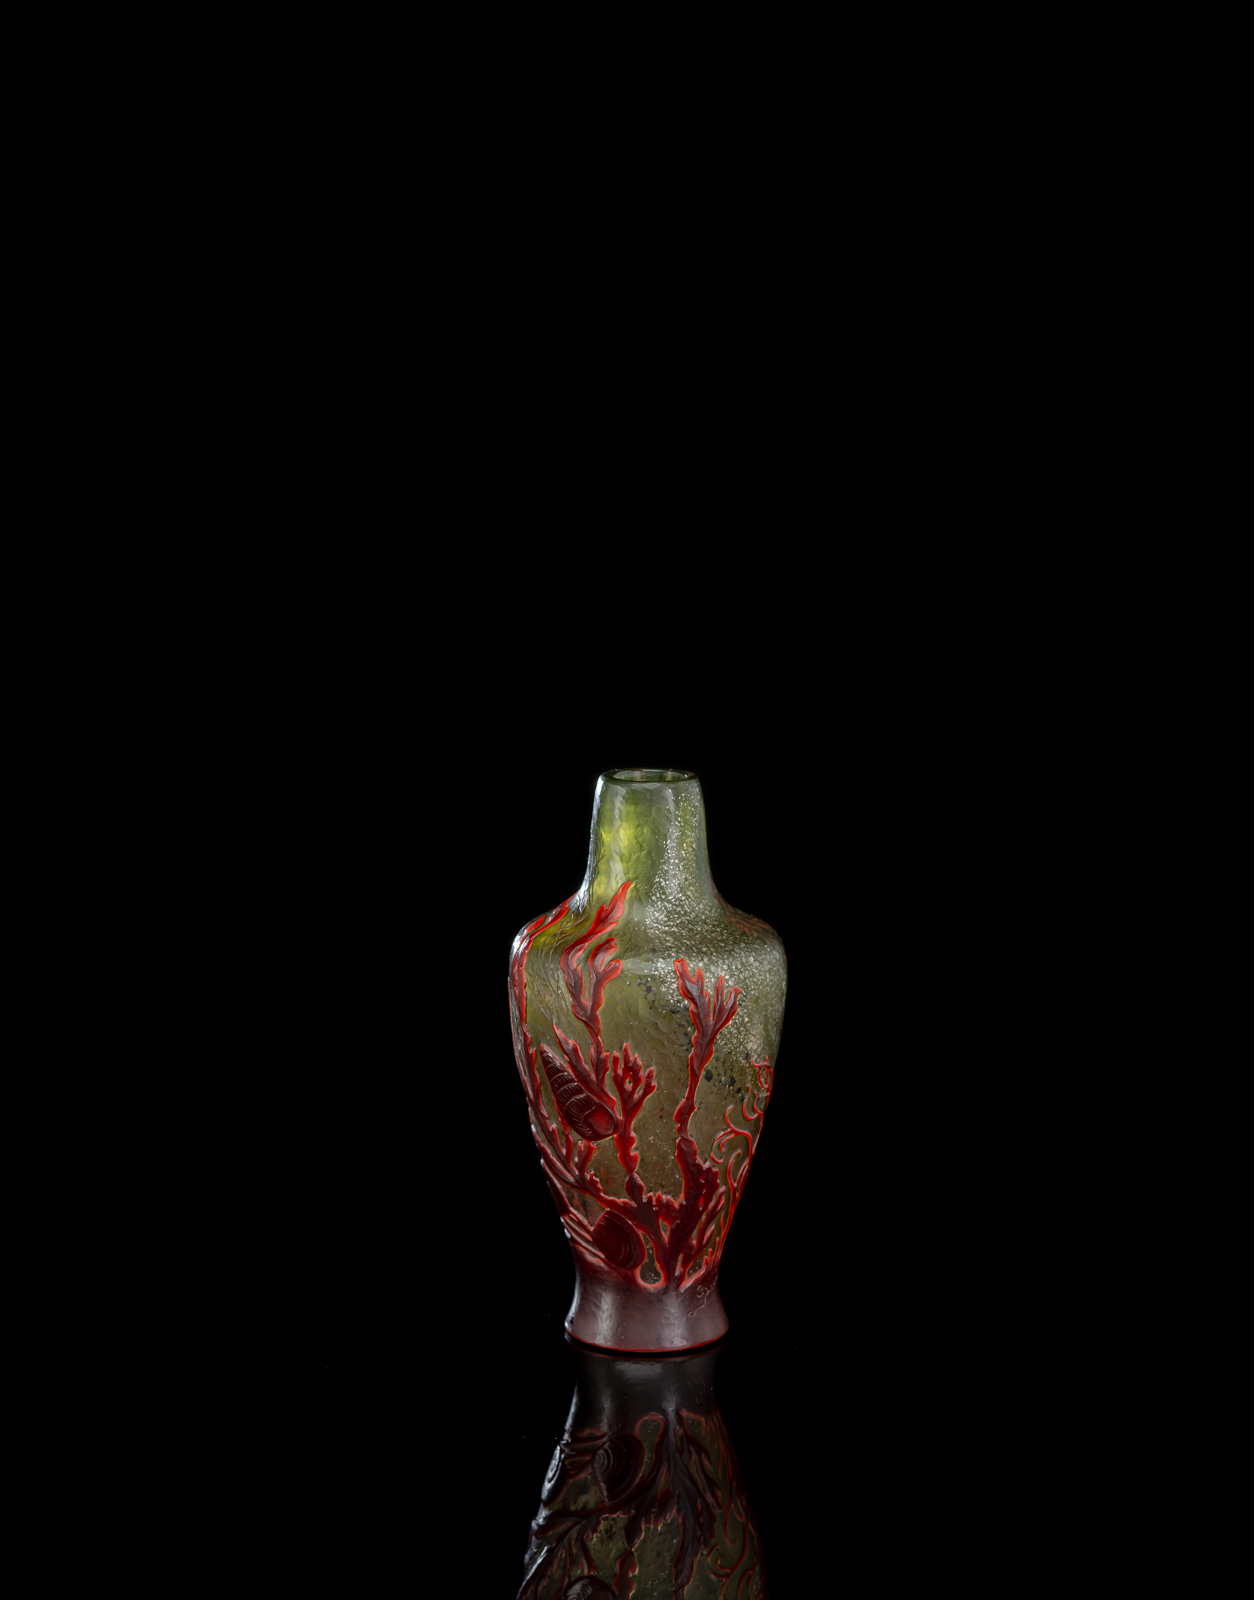 Grünes Glas mit silbernen und roten Pulvereinschmelzungen und Gravur von Wasserpflanzen, roter Glasüberfang mit geätztem Dekor von Seegras und Muscheln. Ätzsignatur 